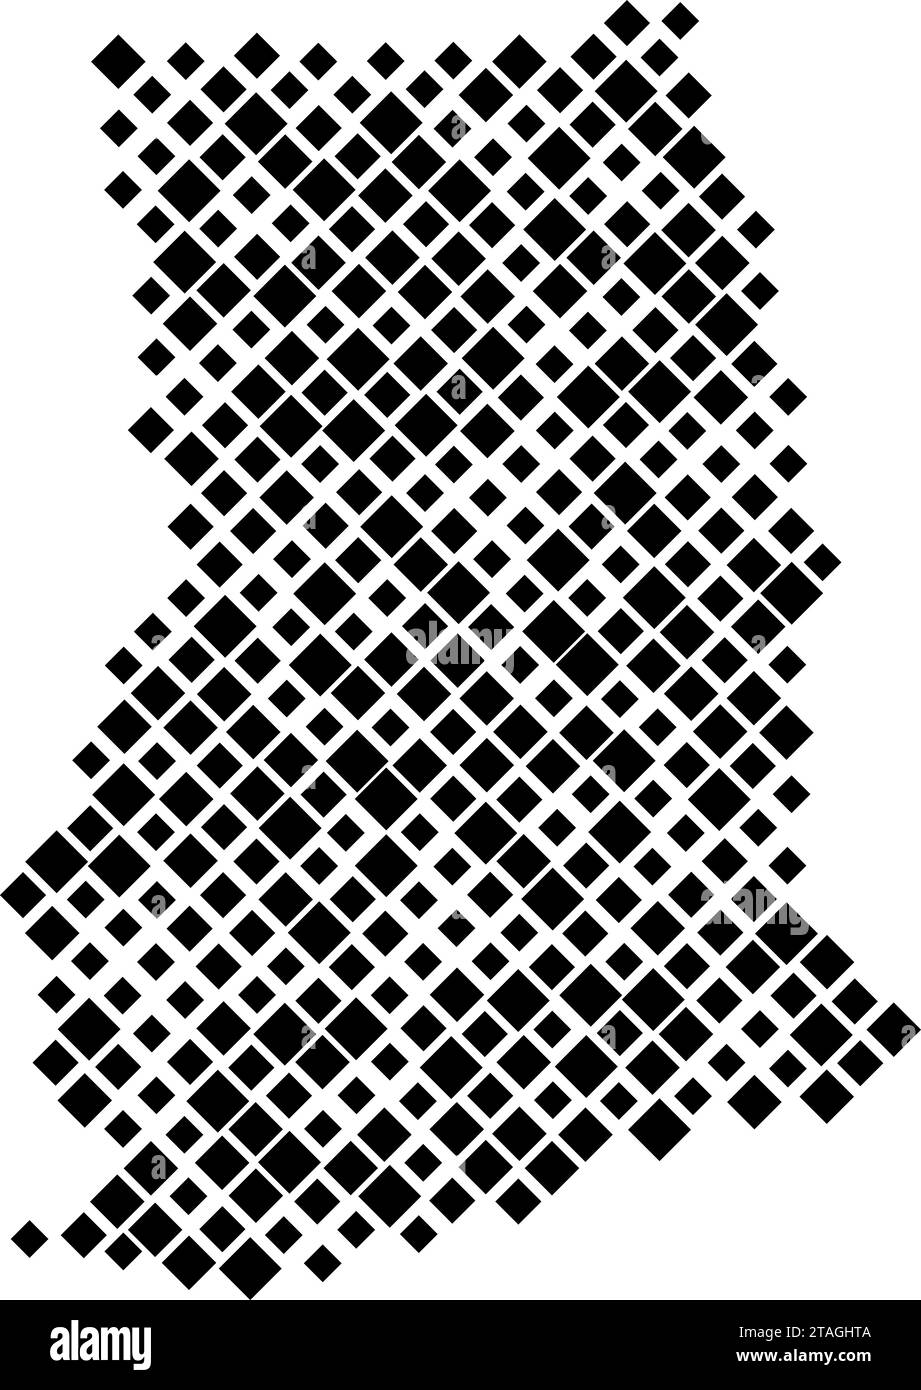 Carte du Ghana à partir d'un motif de losanges noirs de différentes tailles. Illustration vectorielle. Illustration de Vecteur